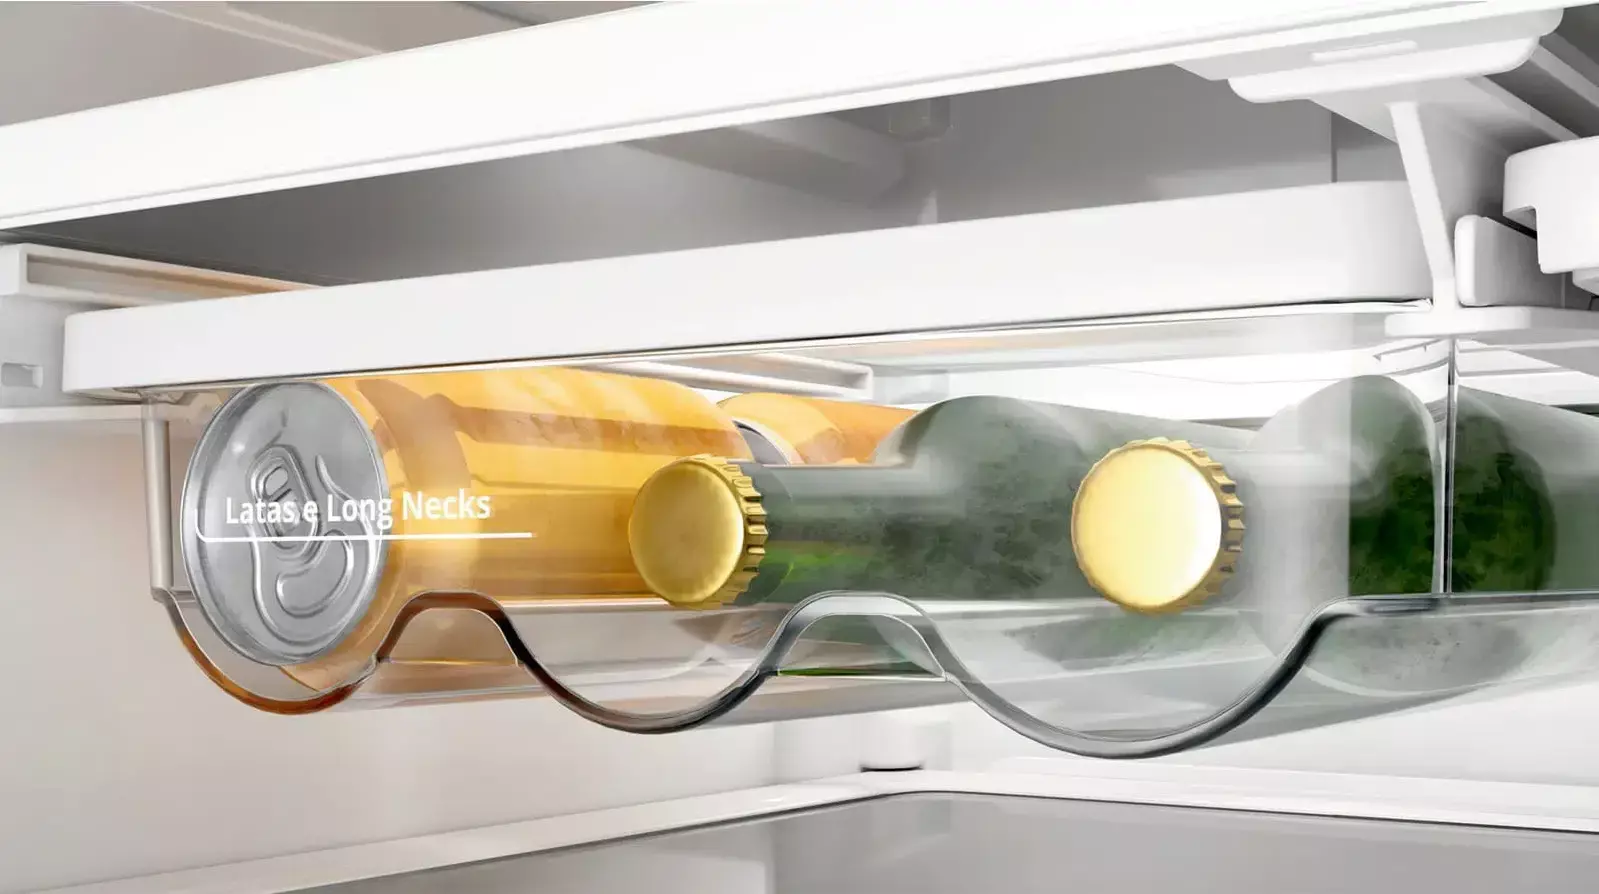 Compartimento de bebida interno da geladeira Brastemp, com duas garrafas e duas latas de bebidas.